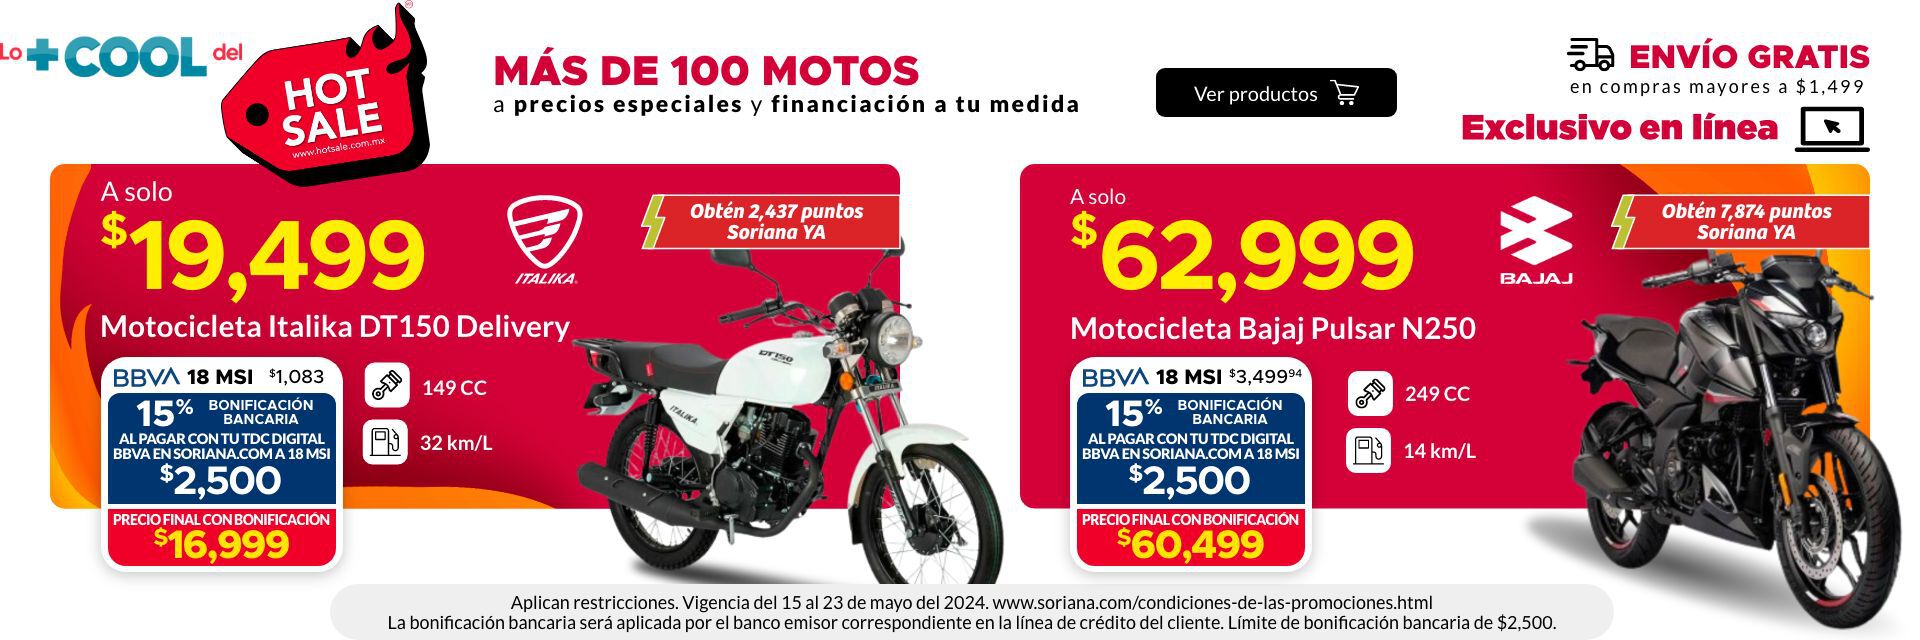 Motocicleta Italika DT150 Delivery a sólo $19,499